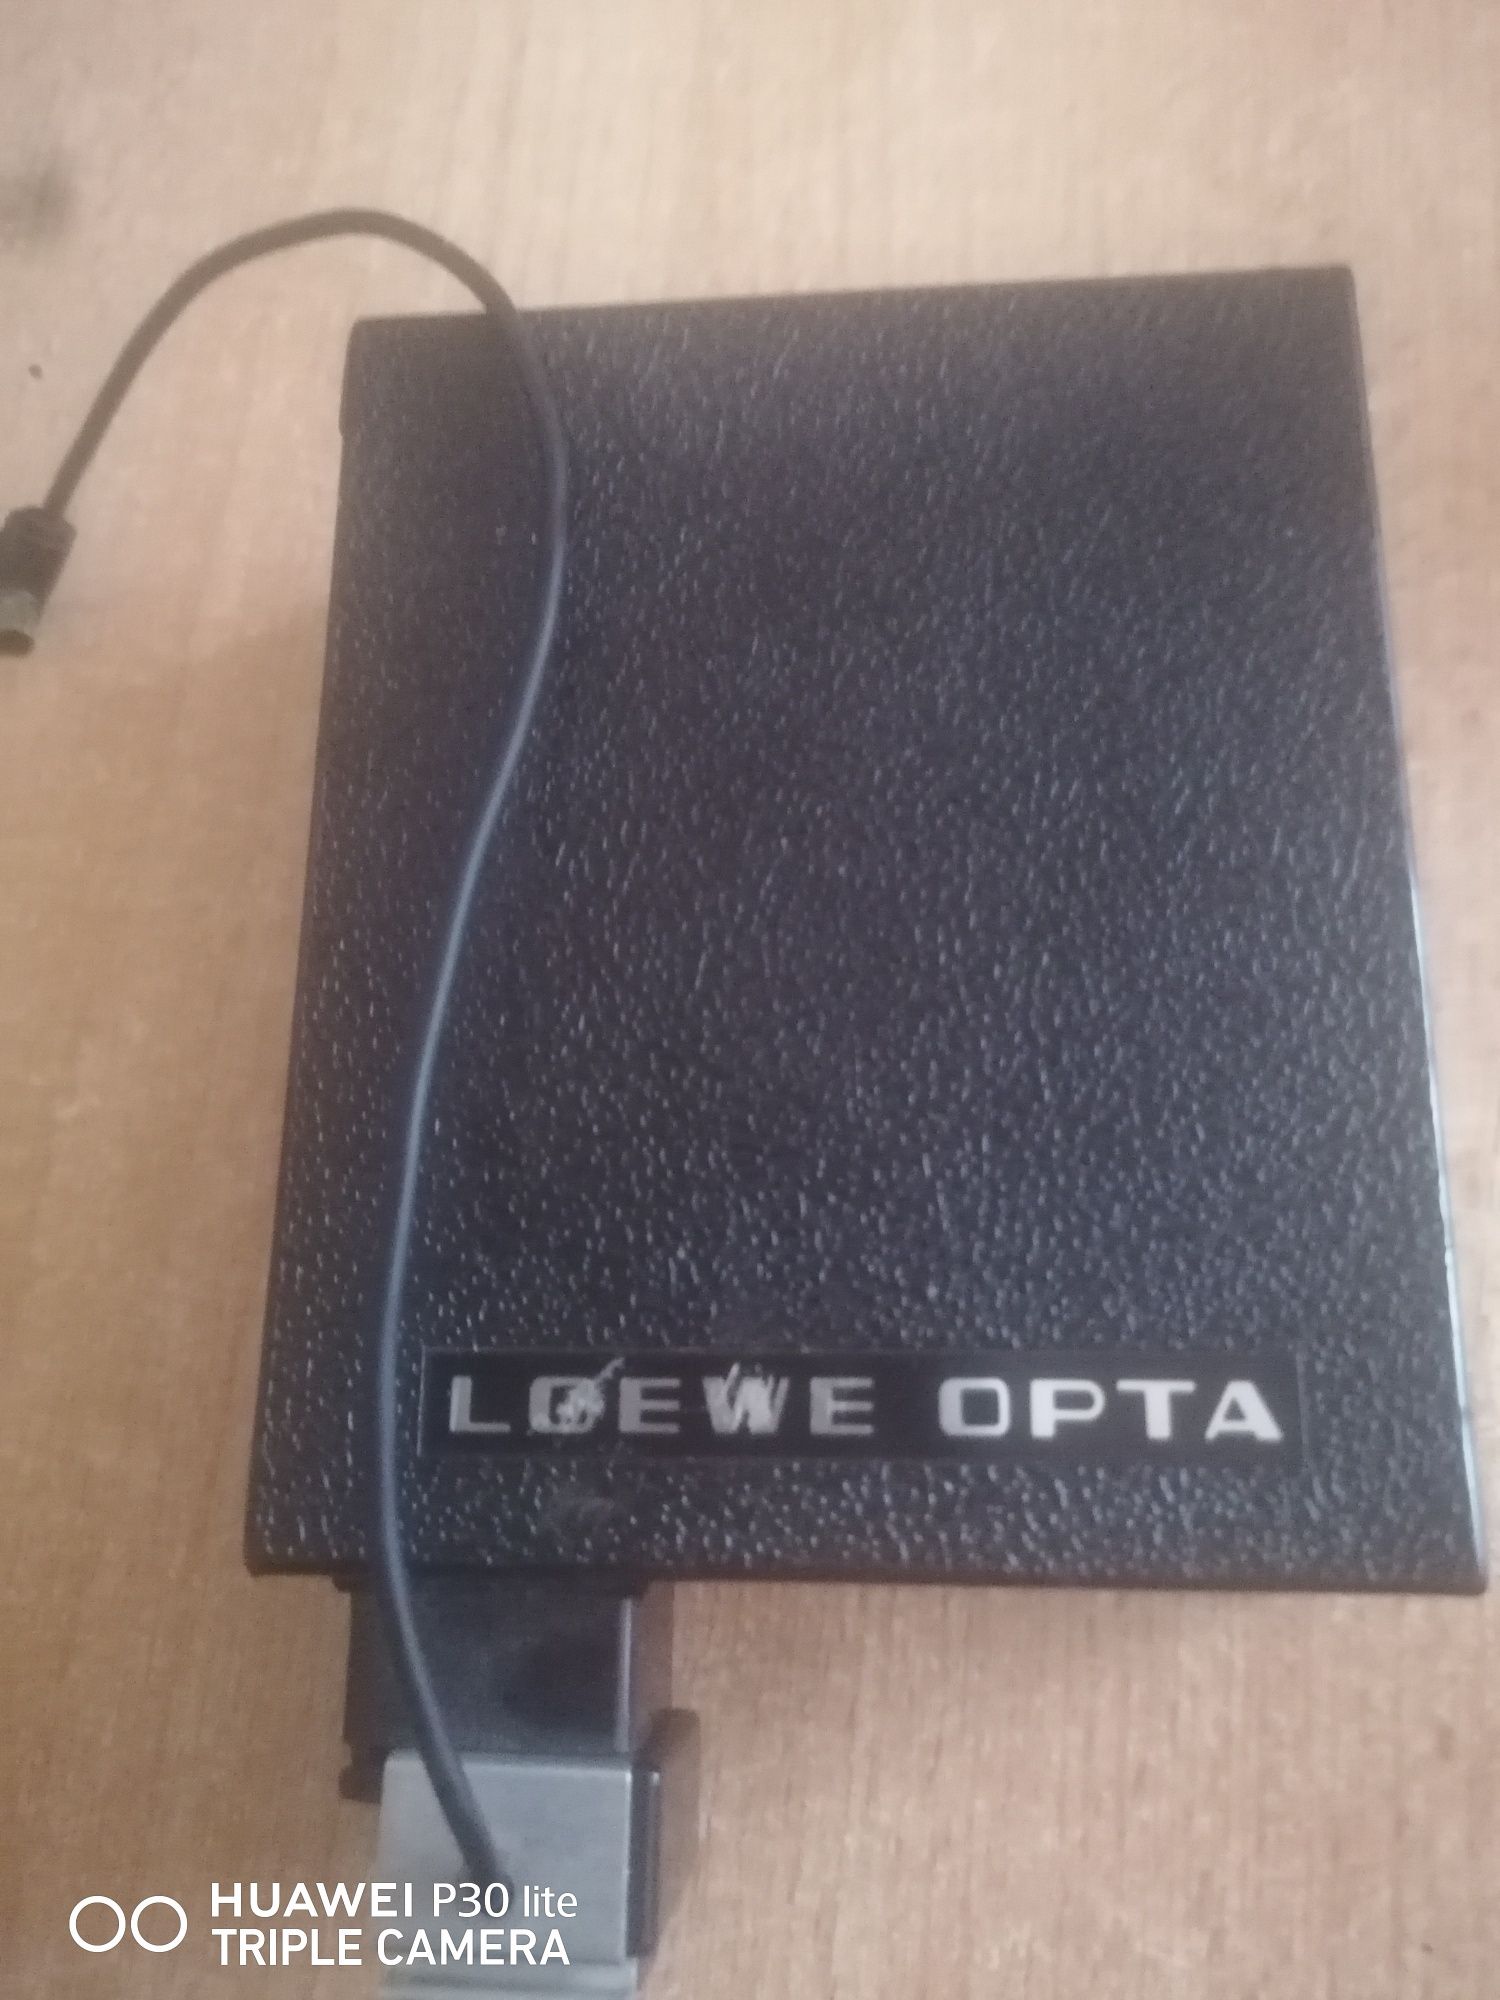 Loewe opta optatron 220